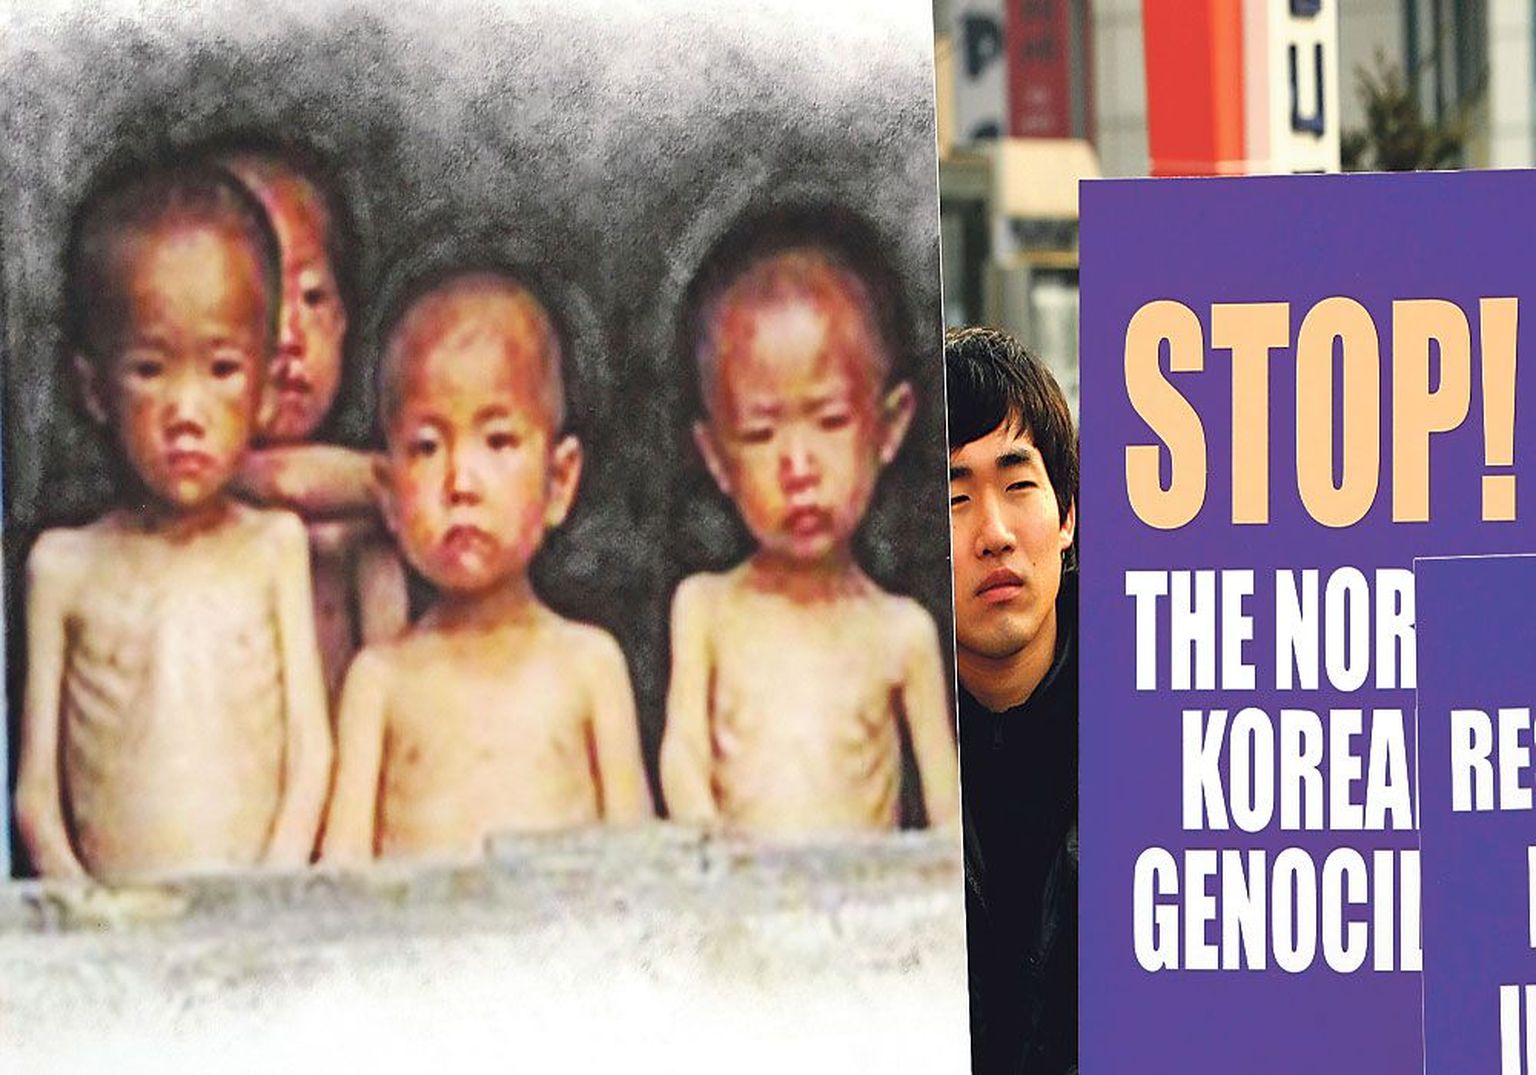 В южнокорейском Сеуле демонстрант с транспарантом, на котором изображены голодающие дети, требует прекращения геноцида в Северной Корее.